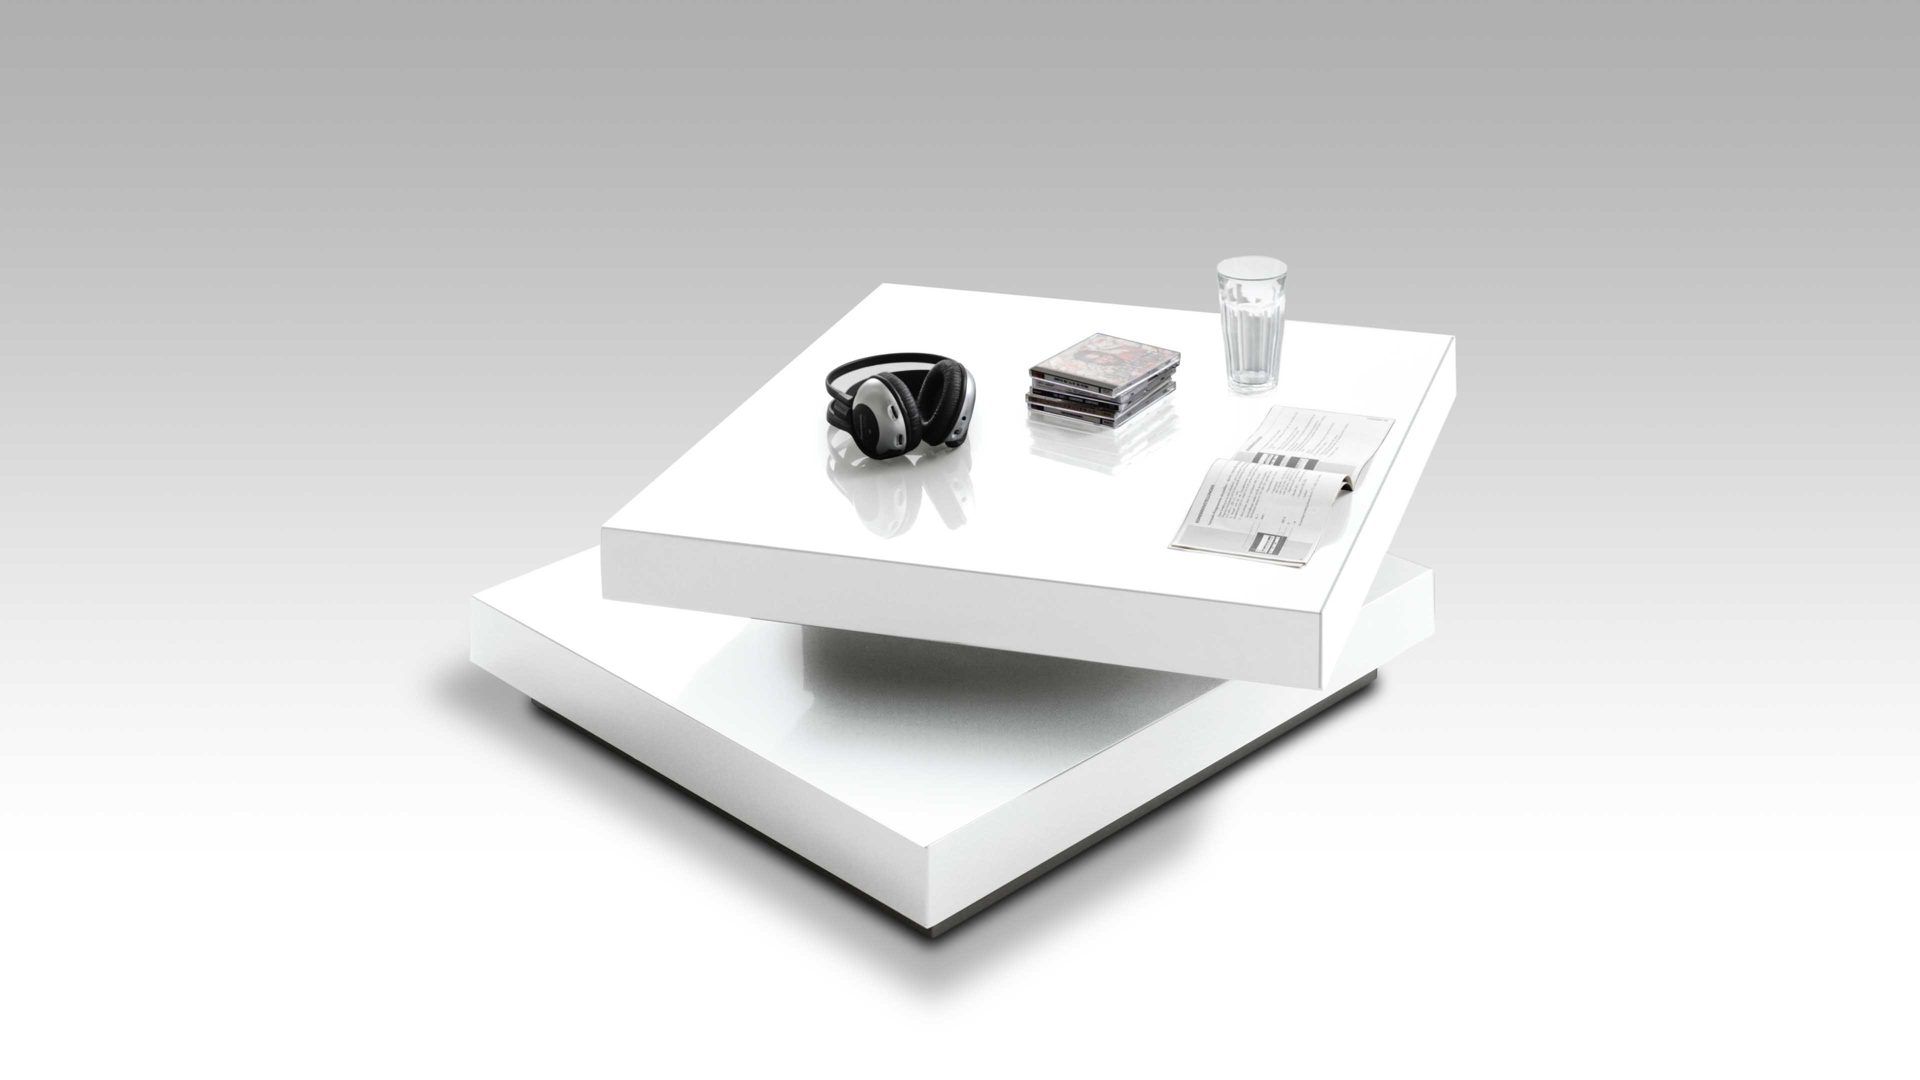 Couchtisch Mca furniture aus Kunststoff in Weiß Couchtisch für komfortables Wohnen weiße Hochglanzoberflächen – ca. 75 x 30 x 75 cm